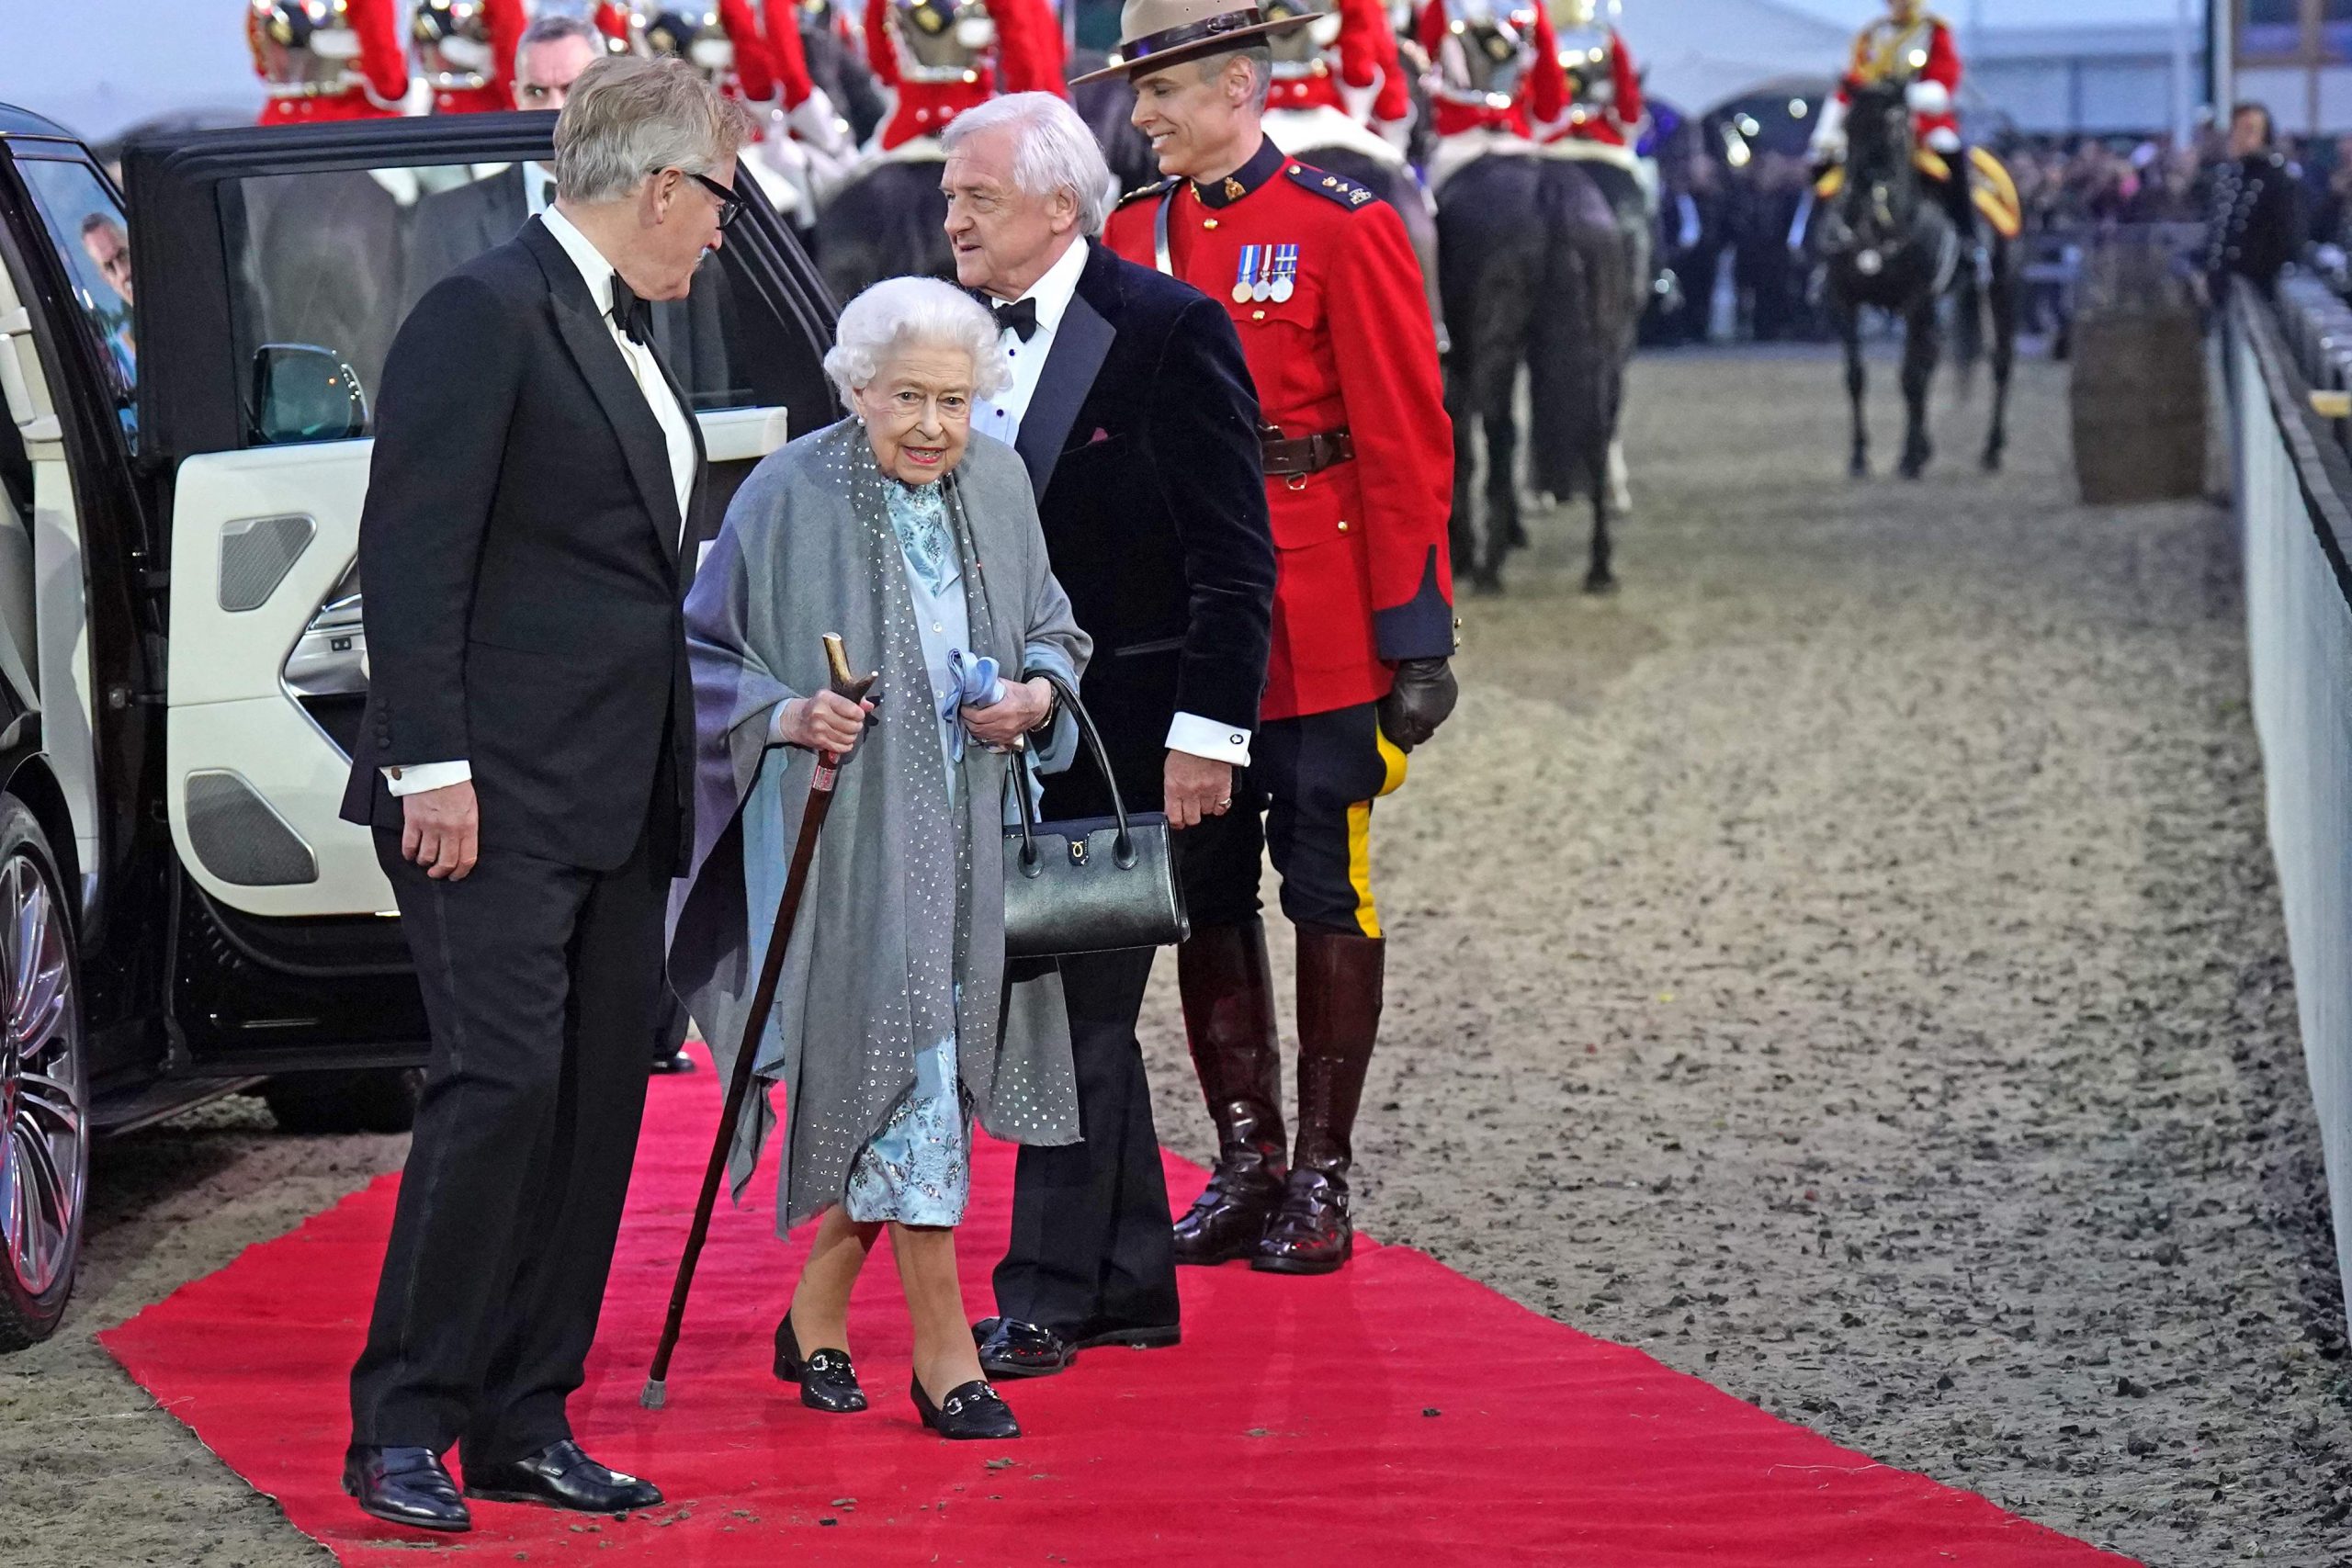  英国／英女王出席温莎马展 拉开庆祝登基70周年活动序幕